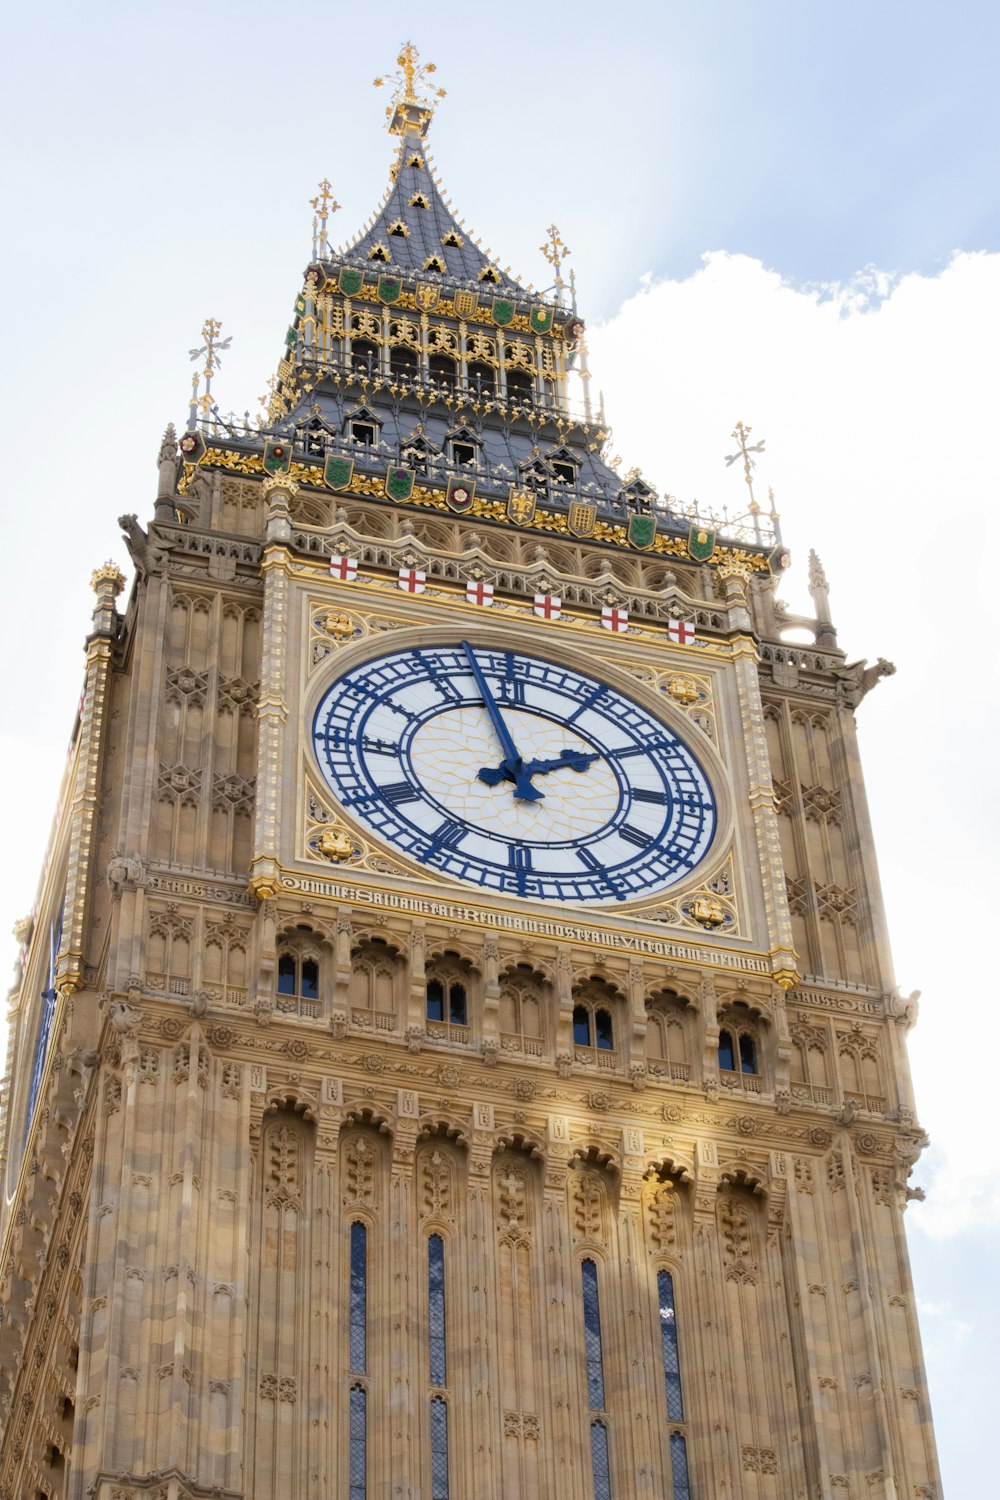 Un gran reloj en una torre